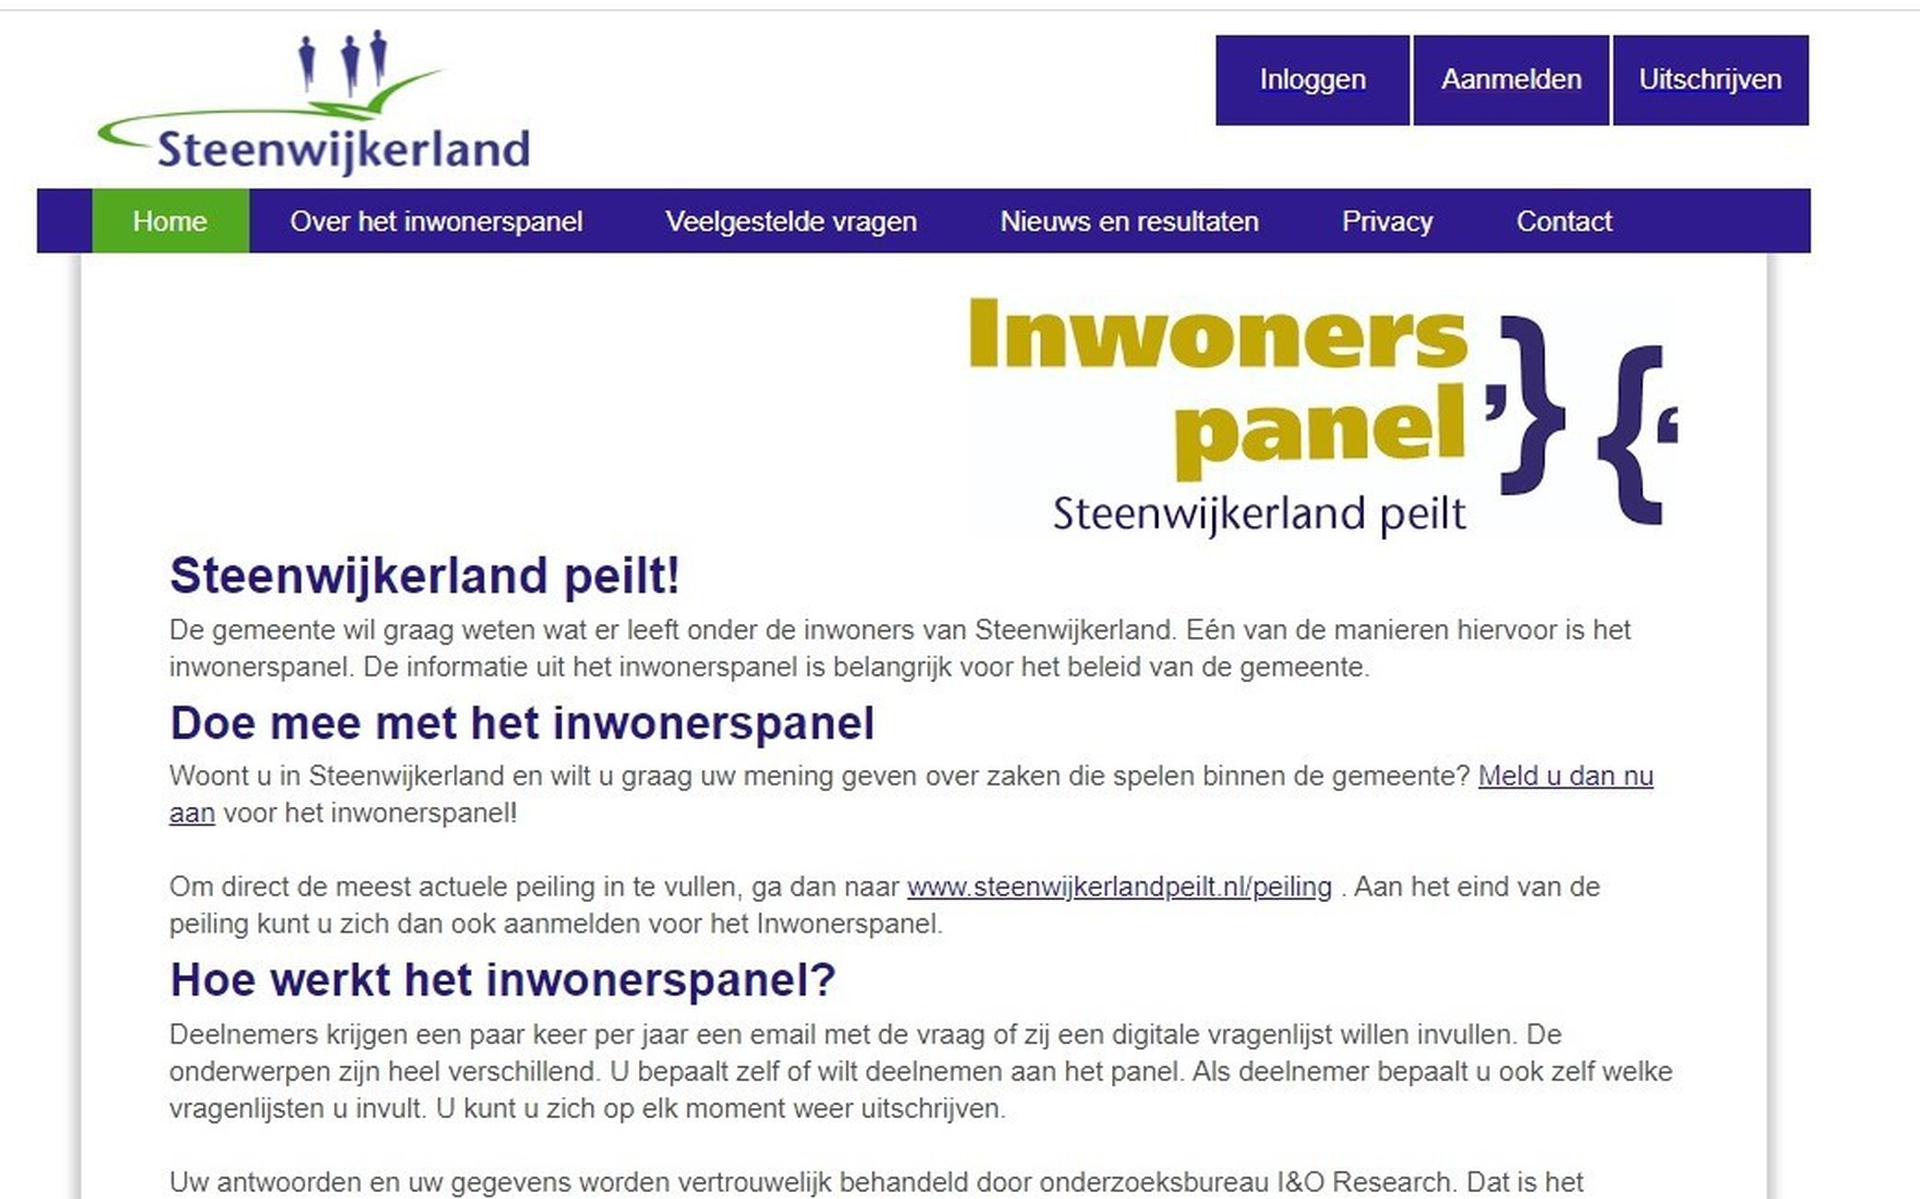 Ook inwoners buiten Steenwijkerland kunnen de enquêtes invullen. Geen goede zaak vindt GroenLinks.